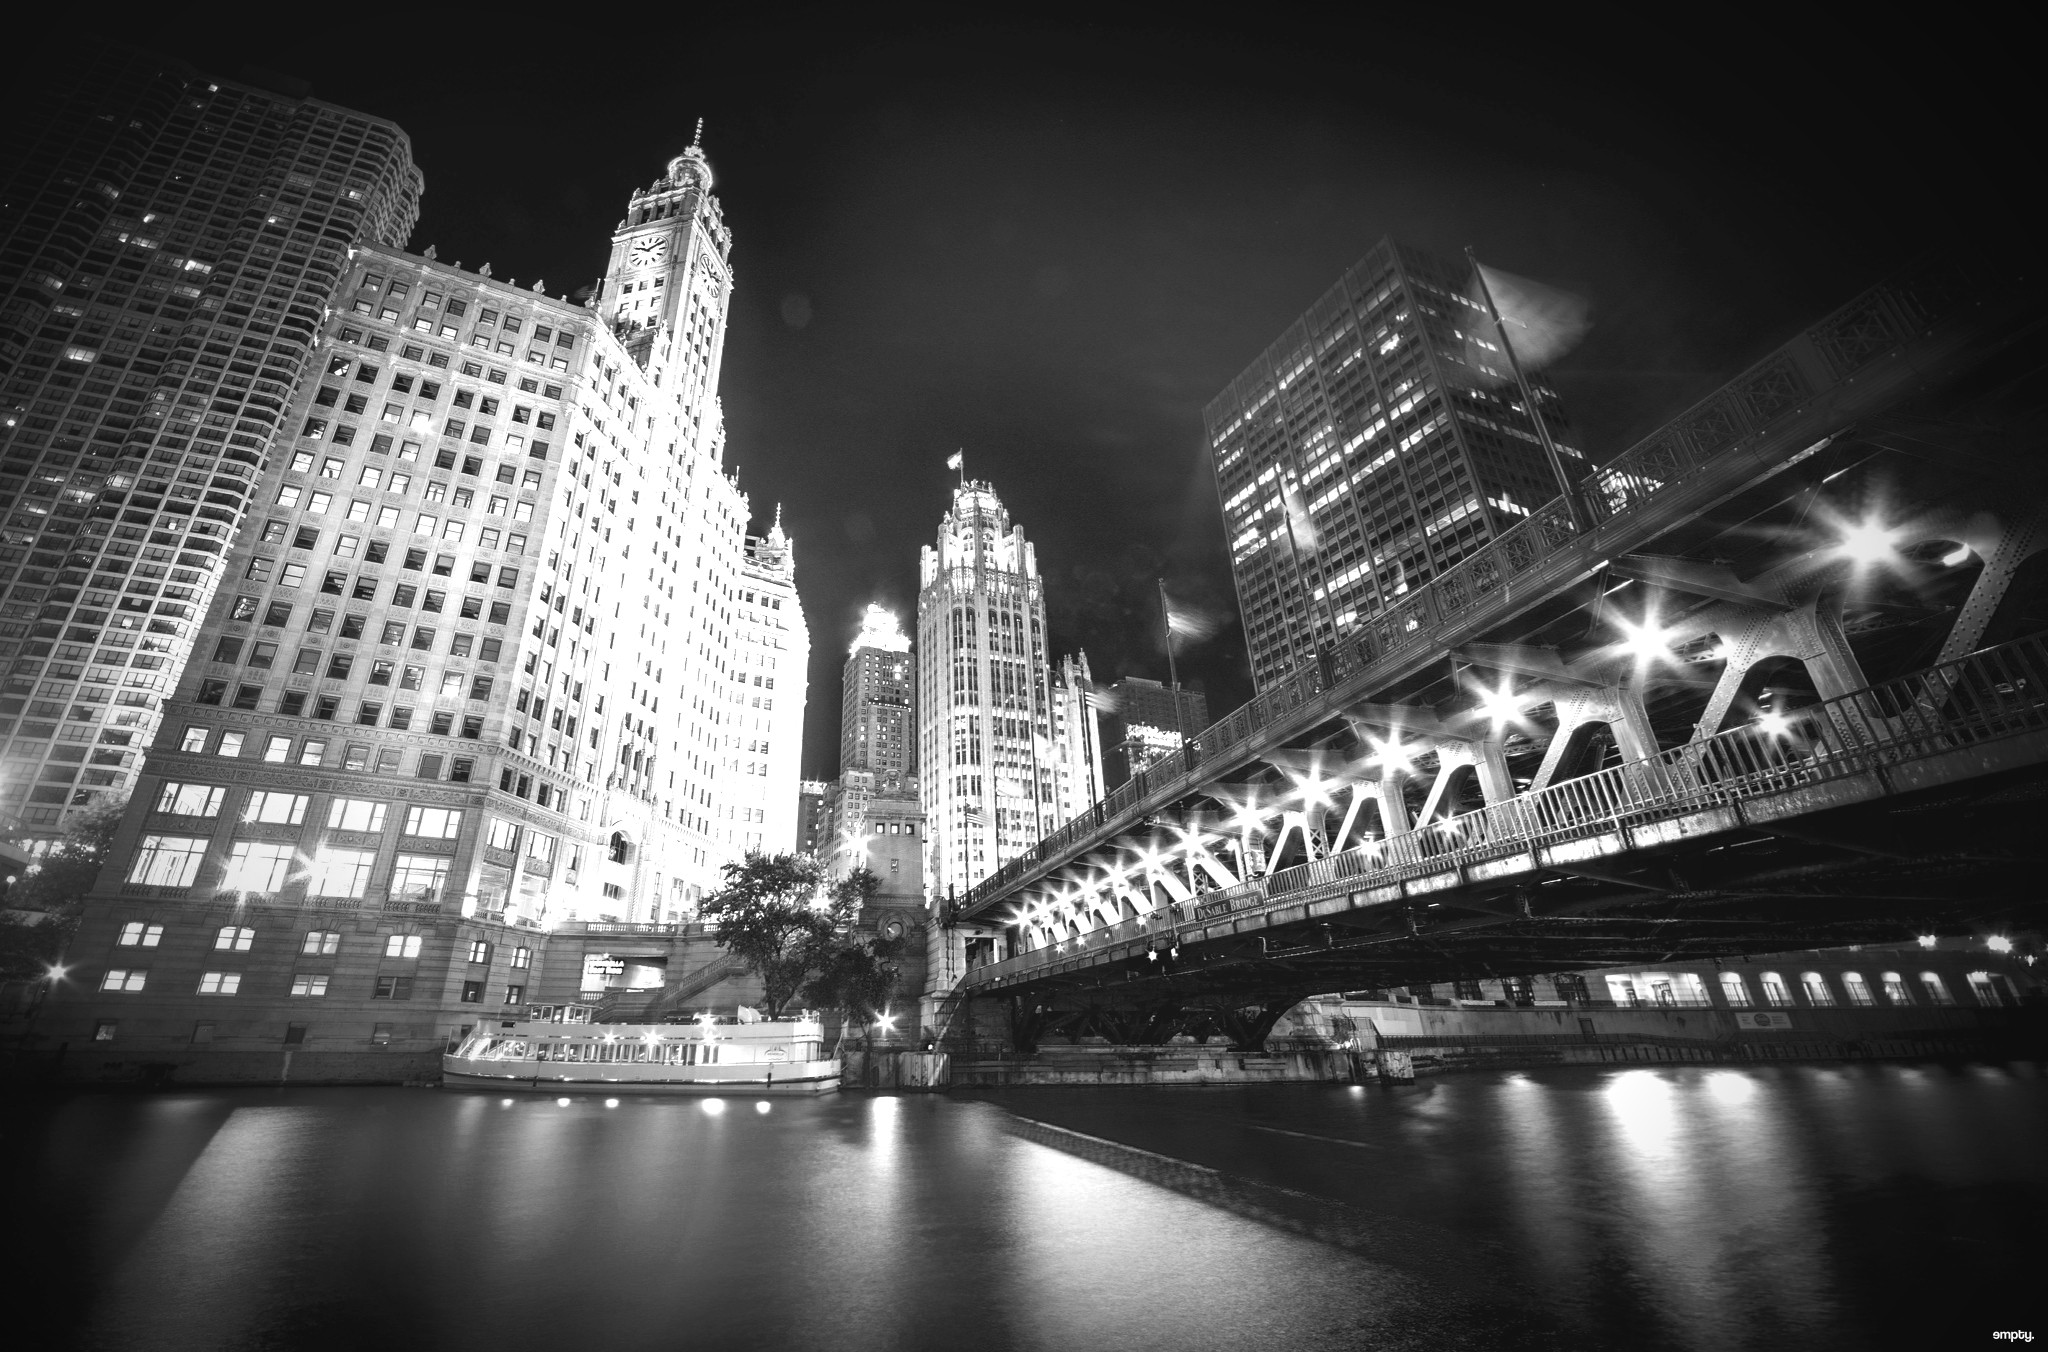 General 2048x1352 bridge architecture city cityscape Chicago USA monochrome watermarked